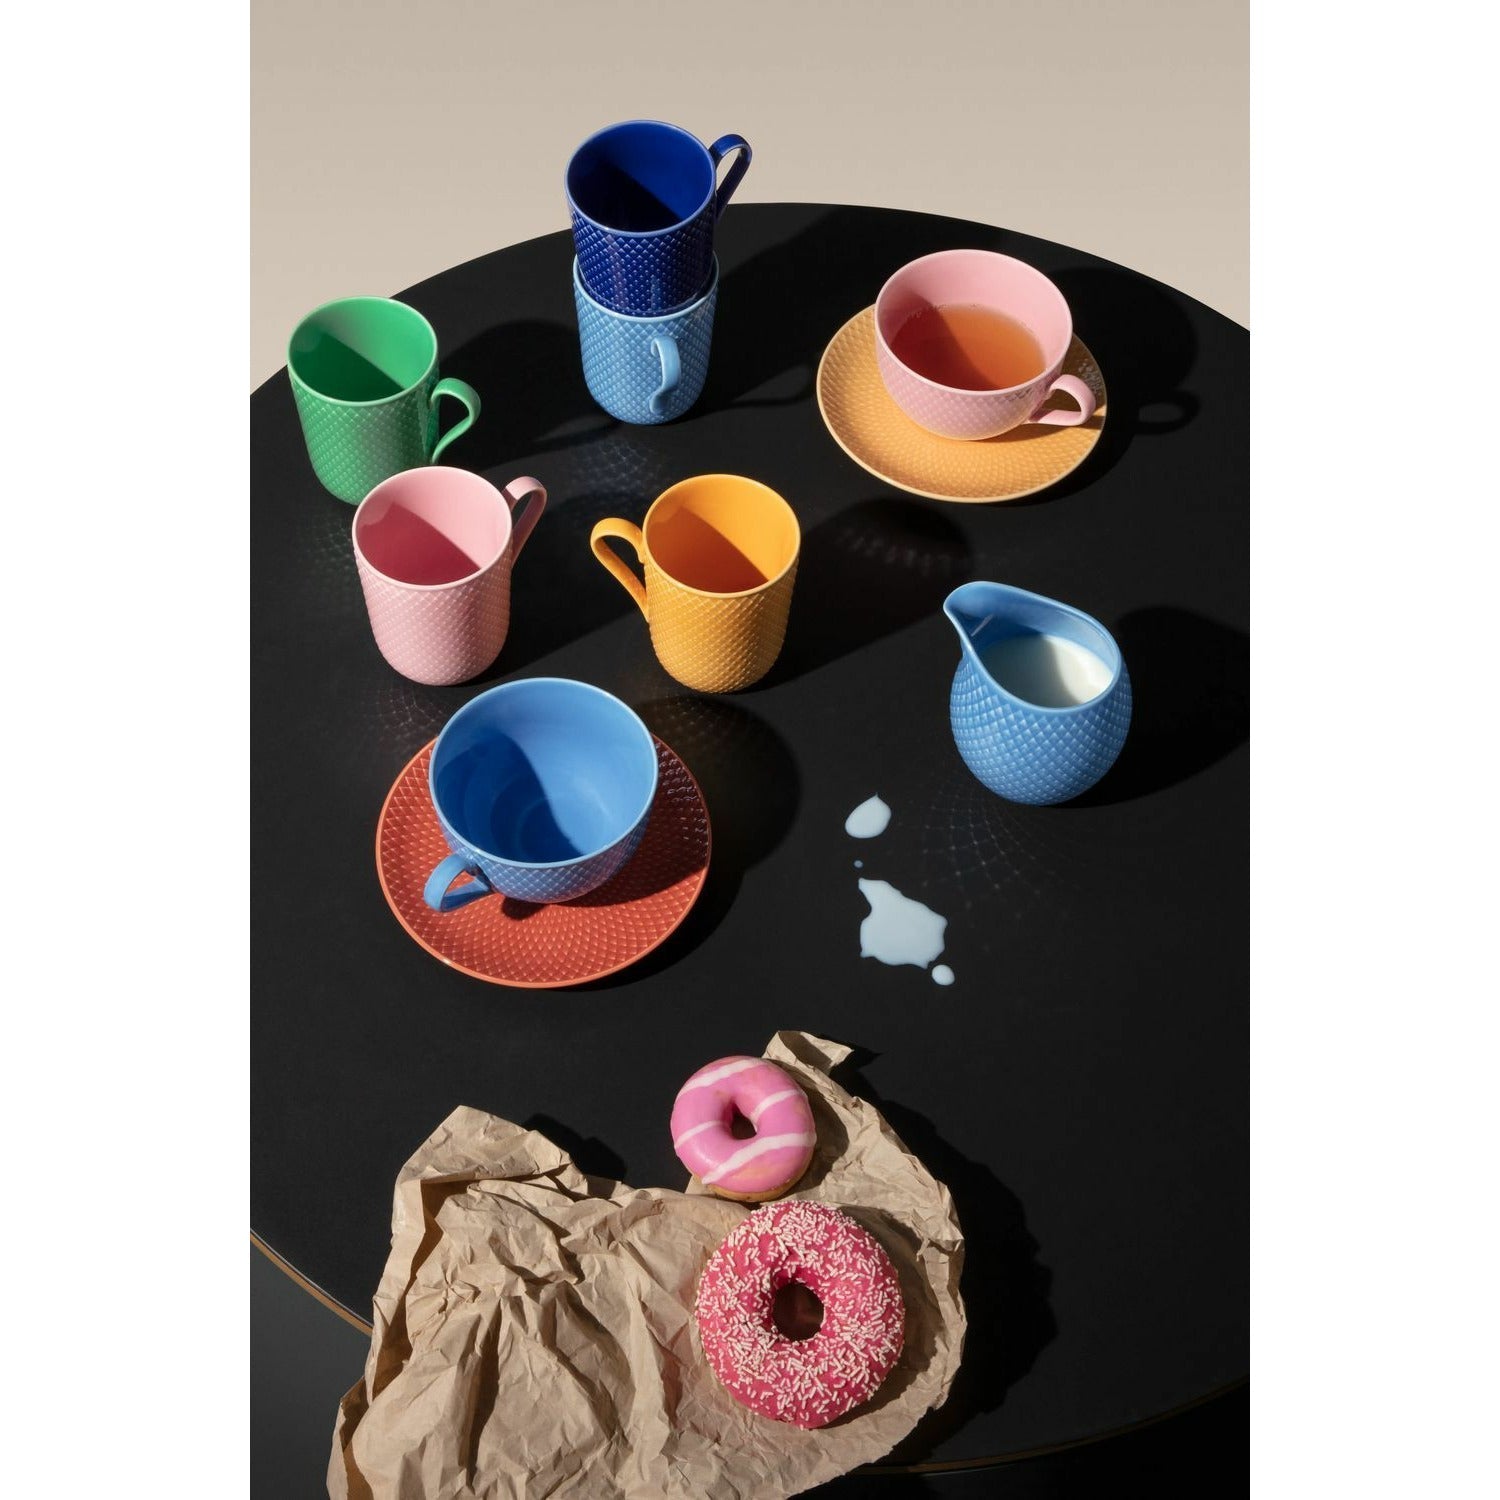 Lyngby Porcelæn Rhombe Color Tea Cup med tefat, blå/terrakotta